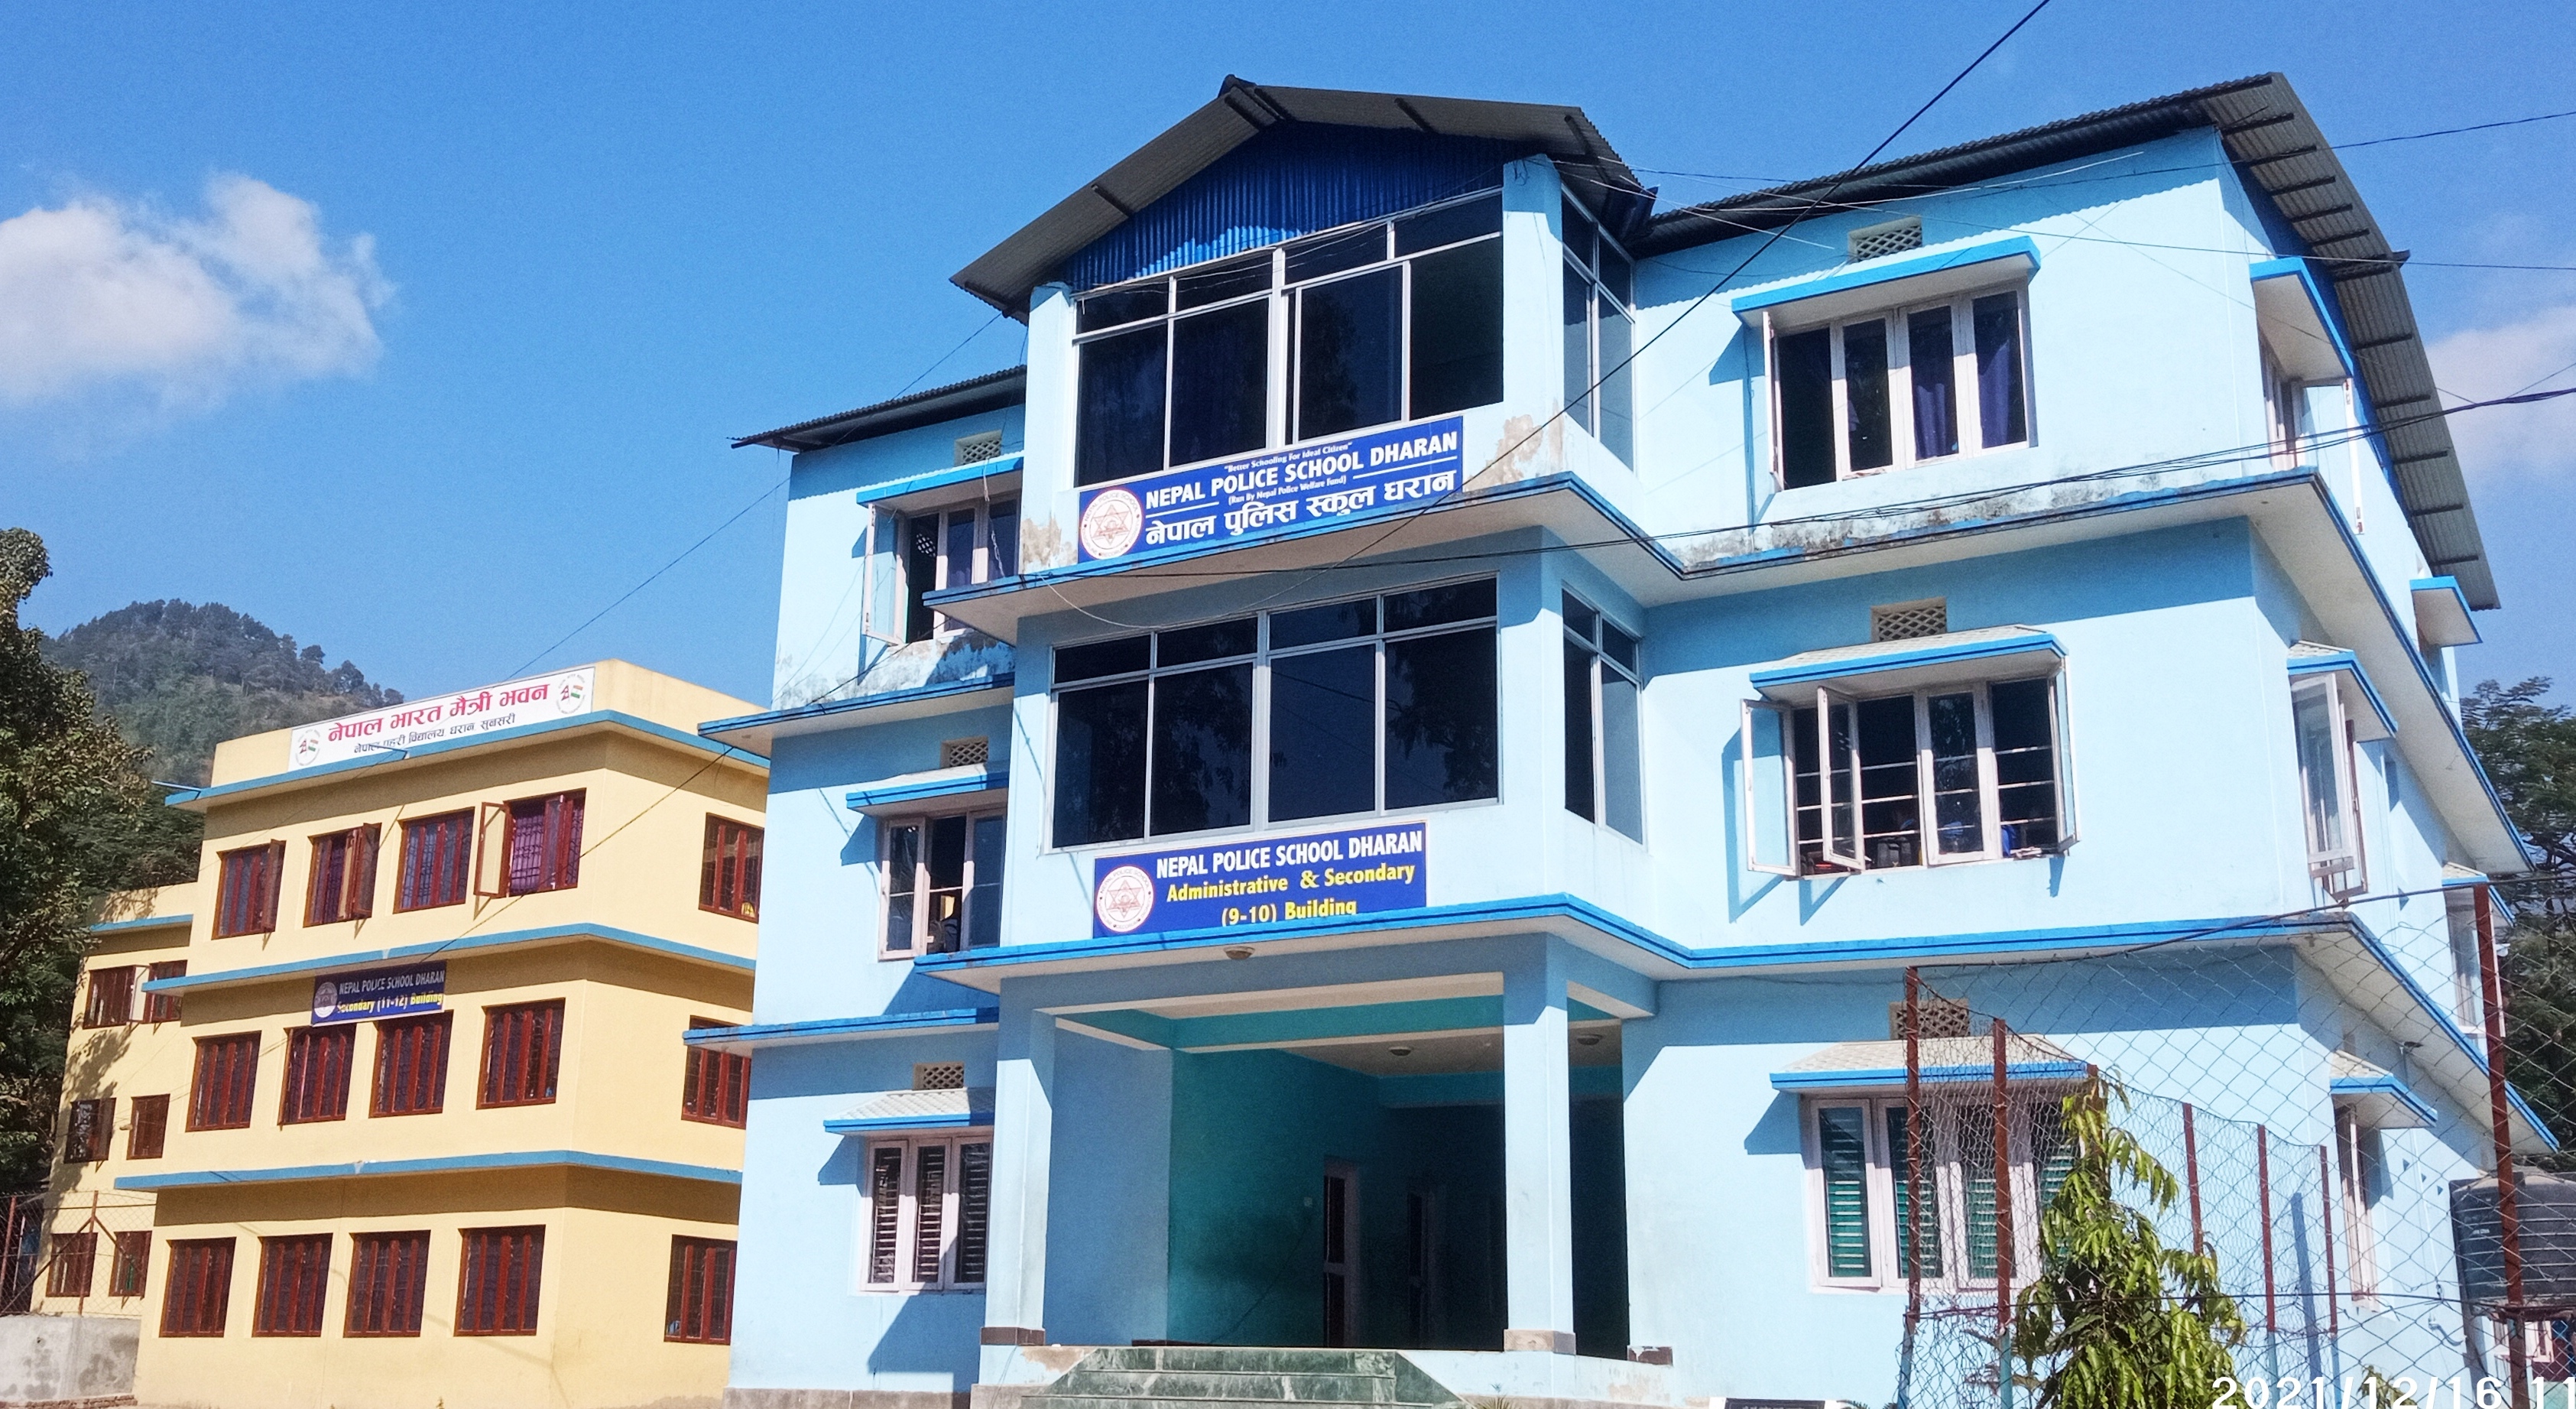 Nepal Police School Dharan Academic& Academic Building